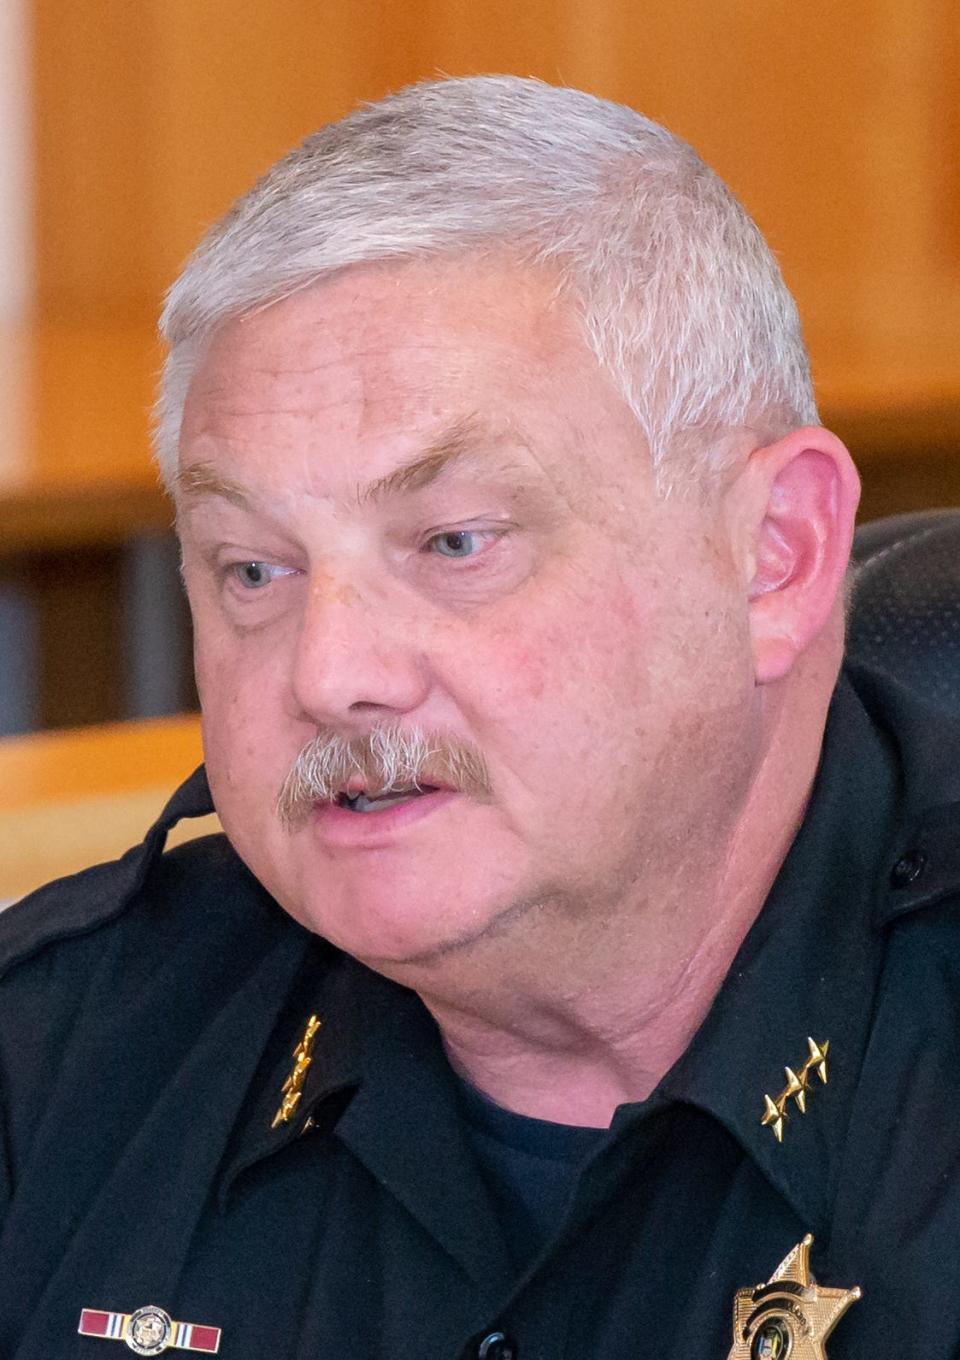 Sheriff Jim Allard